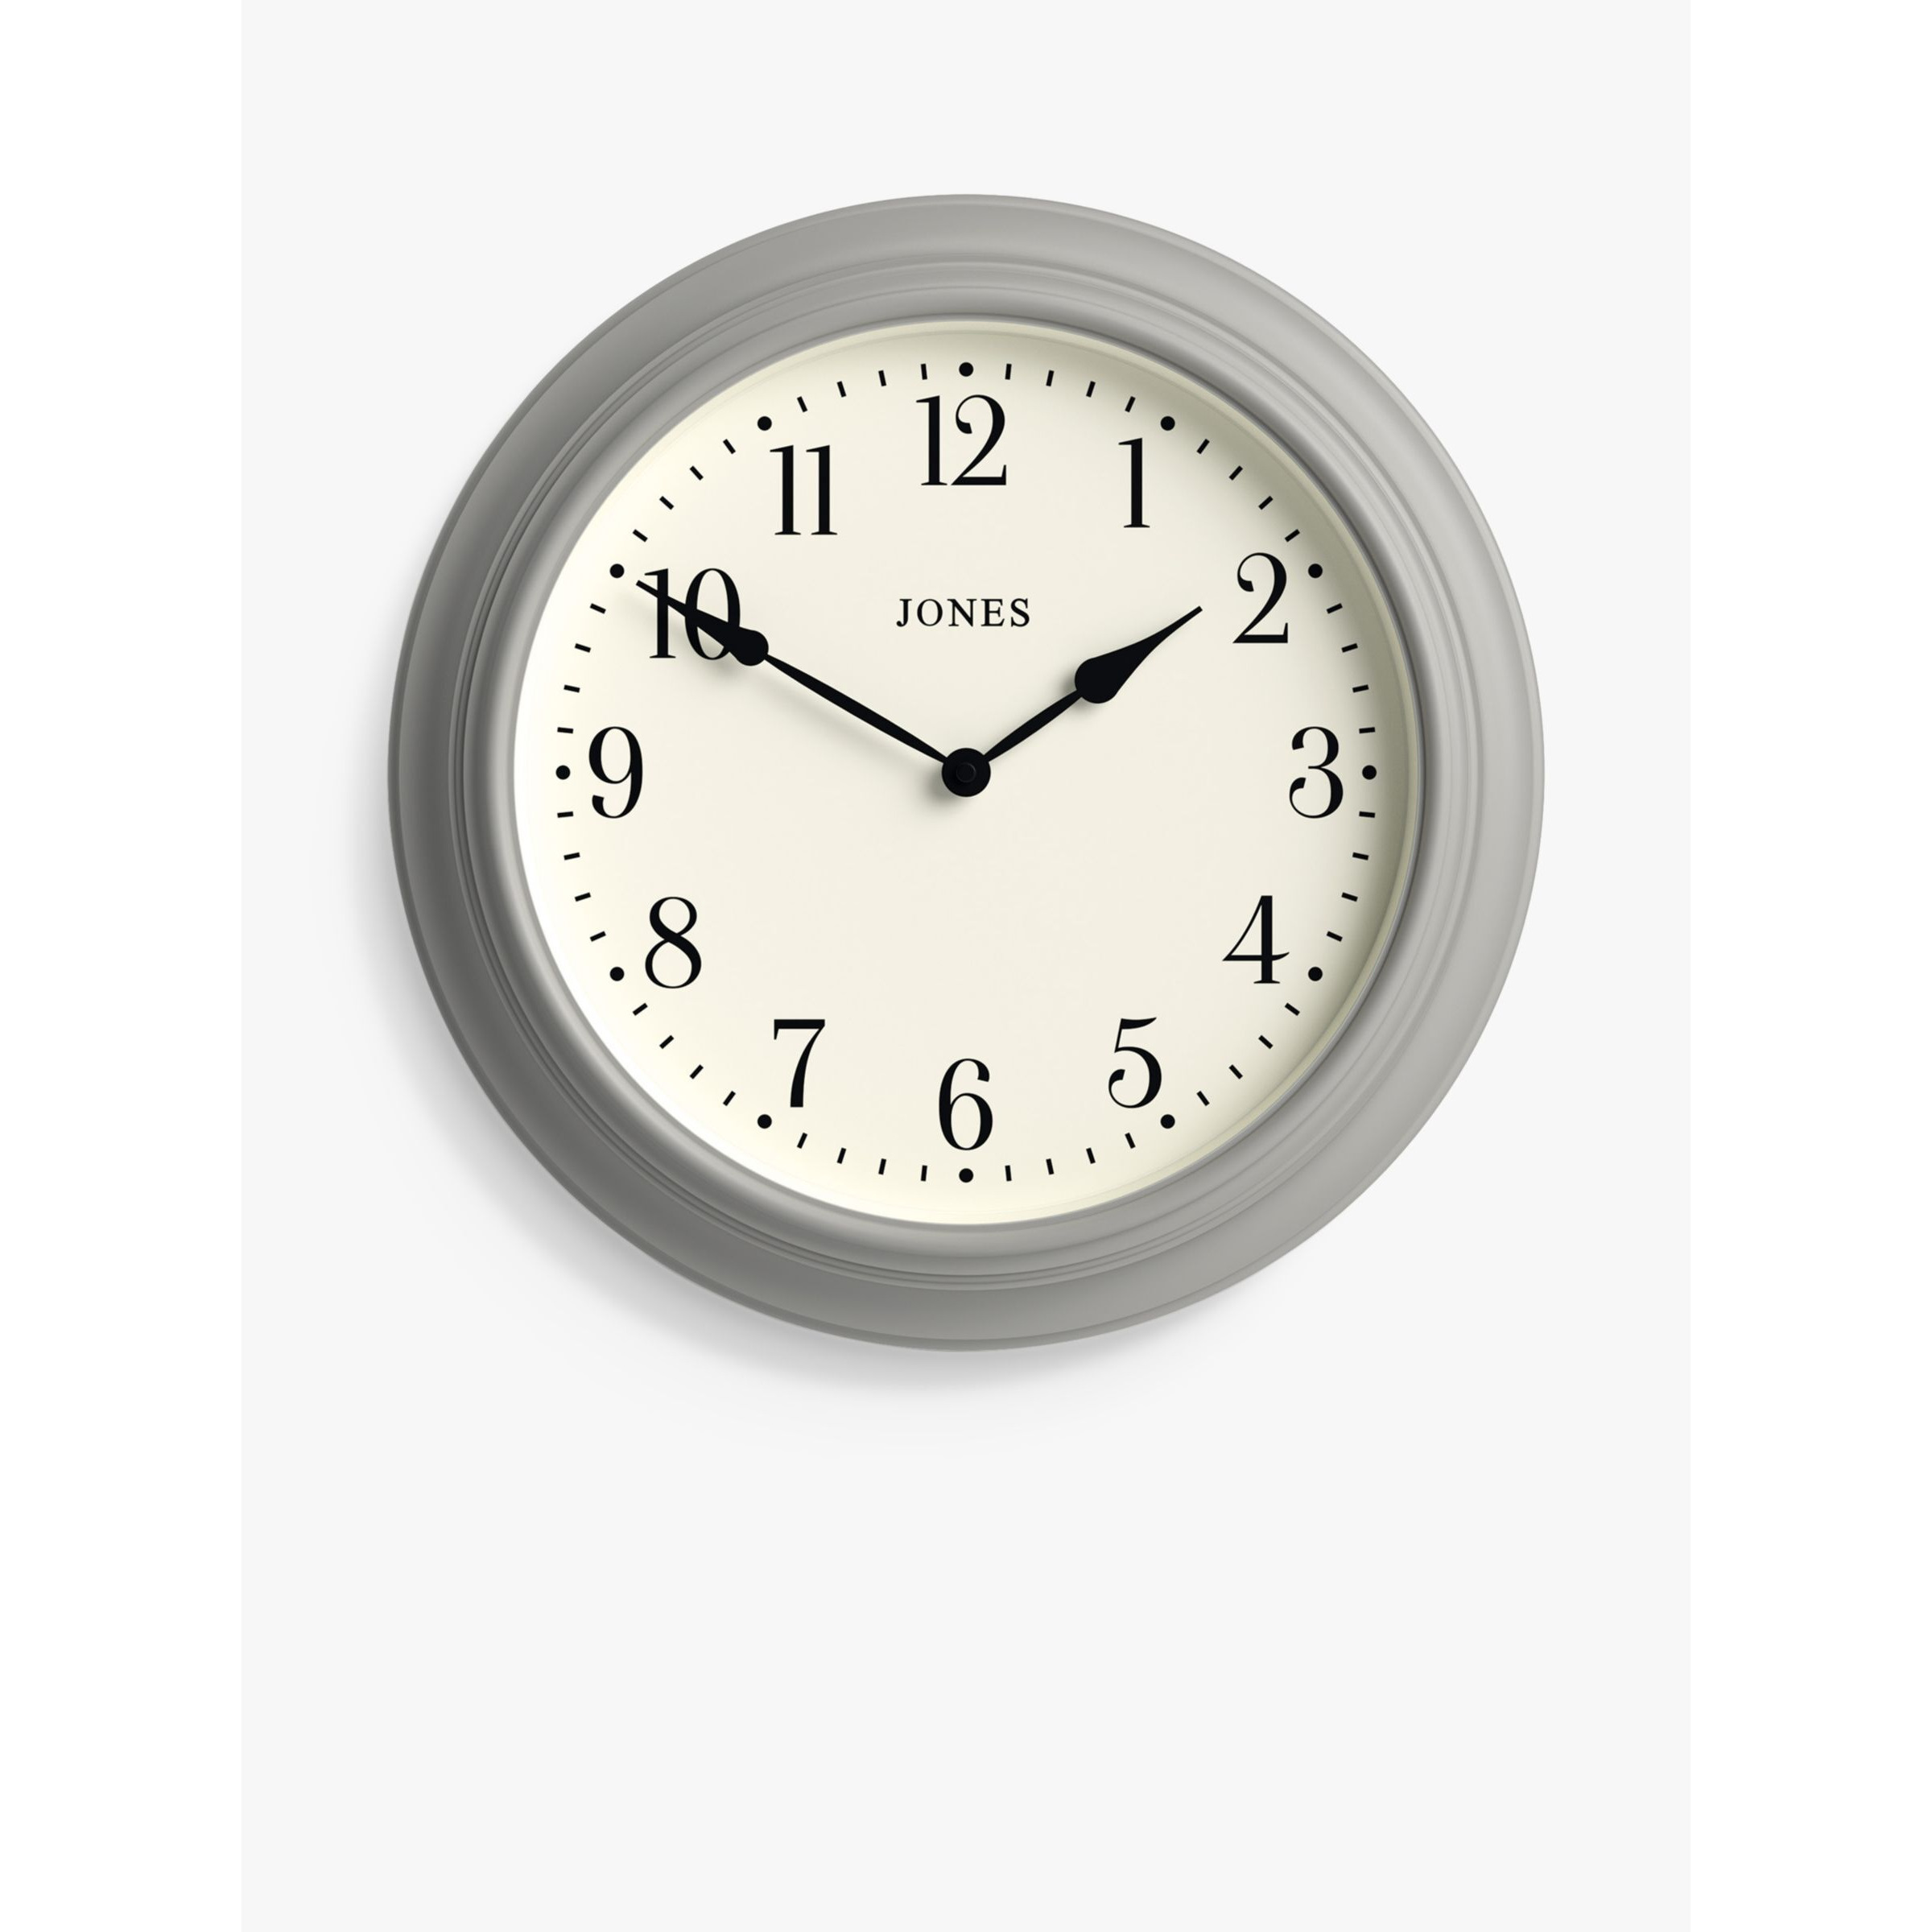 Jones Clocks Supper Club Quartz Analogue Wall Clock, 40.5cm, Cloud Grey - image 1